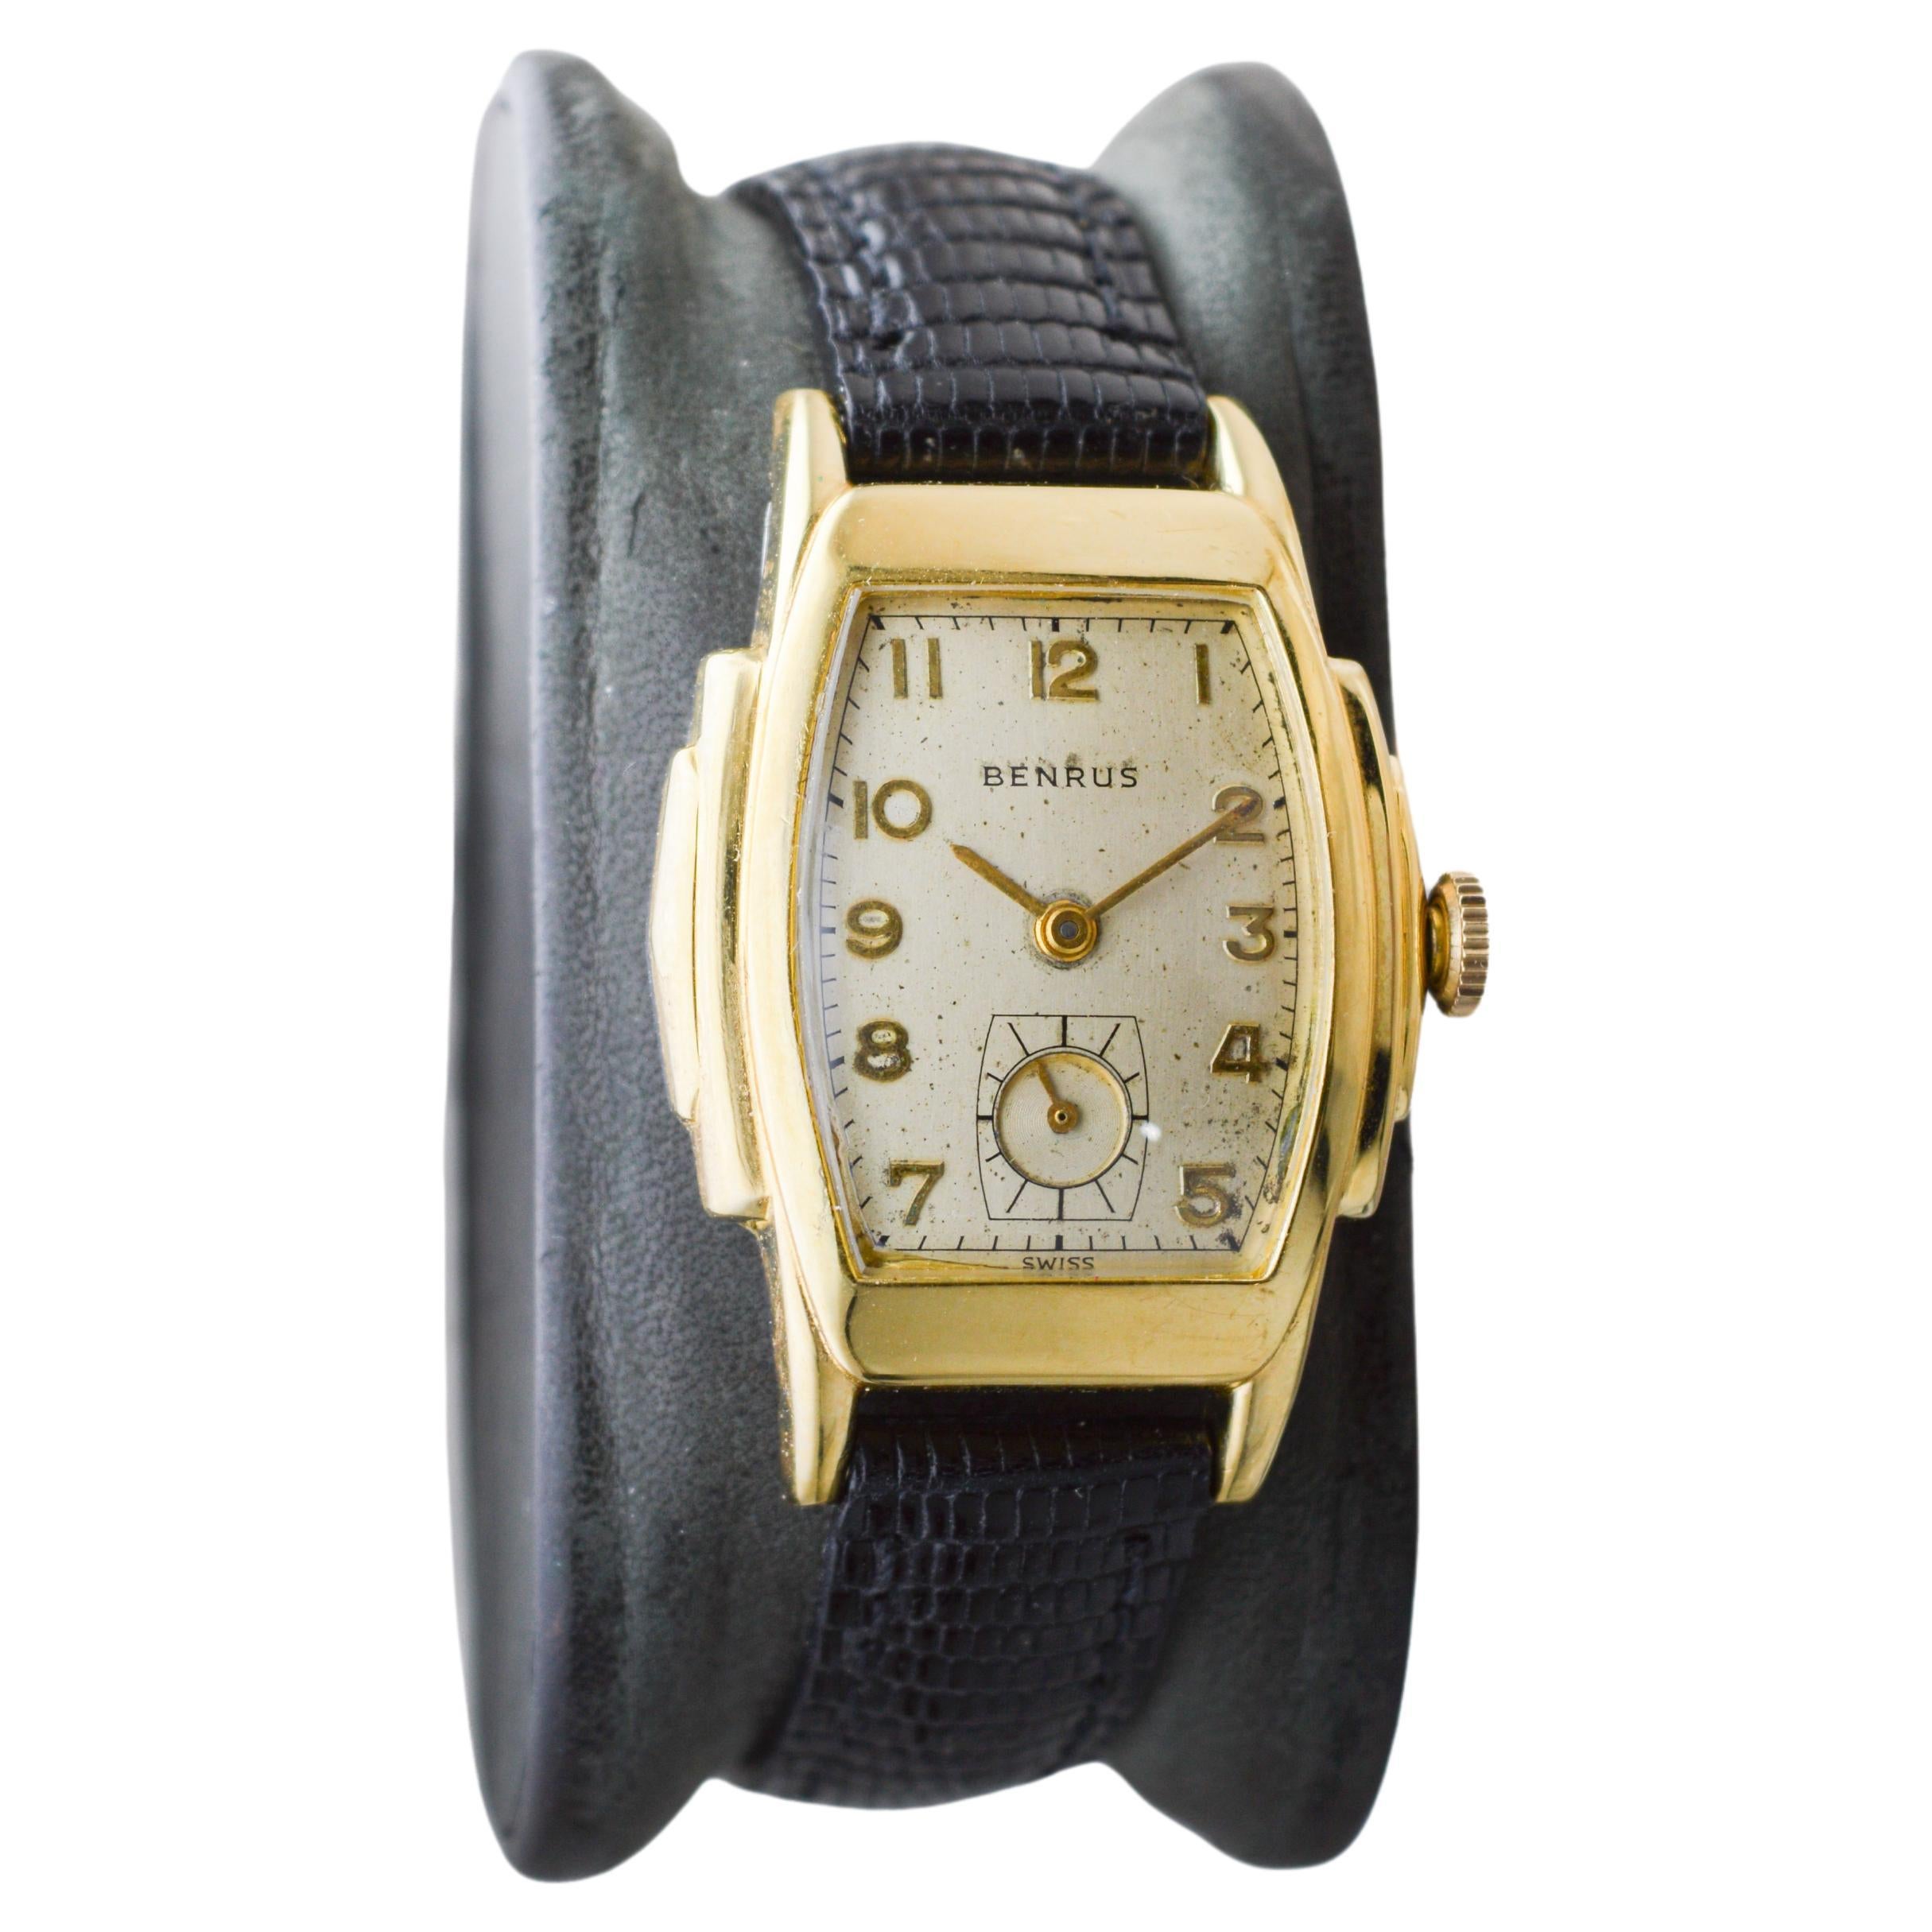 FABRIK / HAUS: Benrus Watch Company
STIL / REFERENZ: Art Deco / Curvex Stil
METALL / MATERIAL: Gold-gefüllt
CIRCA / JAHR: 1940er Jahre
ABMESSUNGEN / GRÖSSE: Länge 40mm X Breite 28mm
UHRWERK / KALIBER: Handaufzug / 15 Jewels / Kaliber 883
ZIFFERBLATT